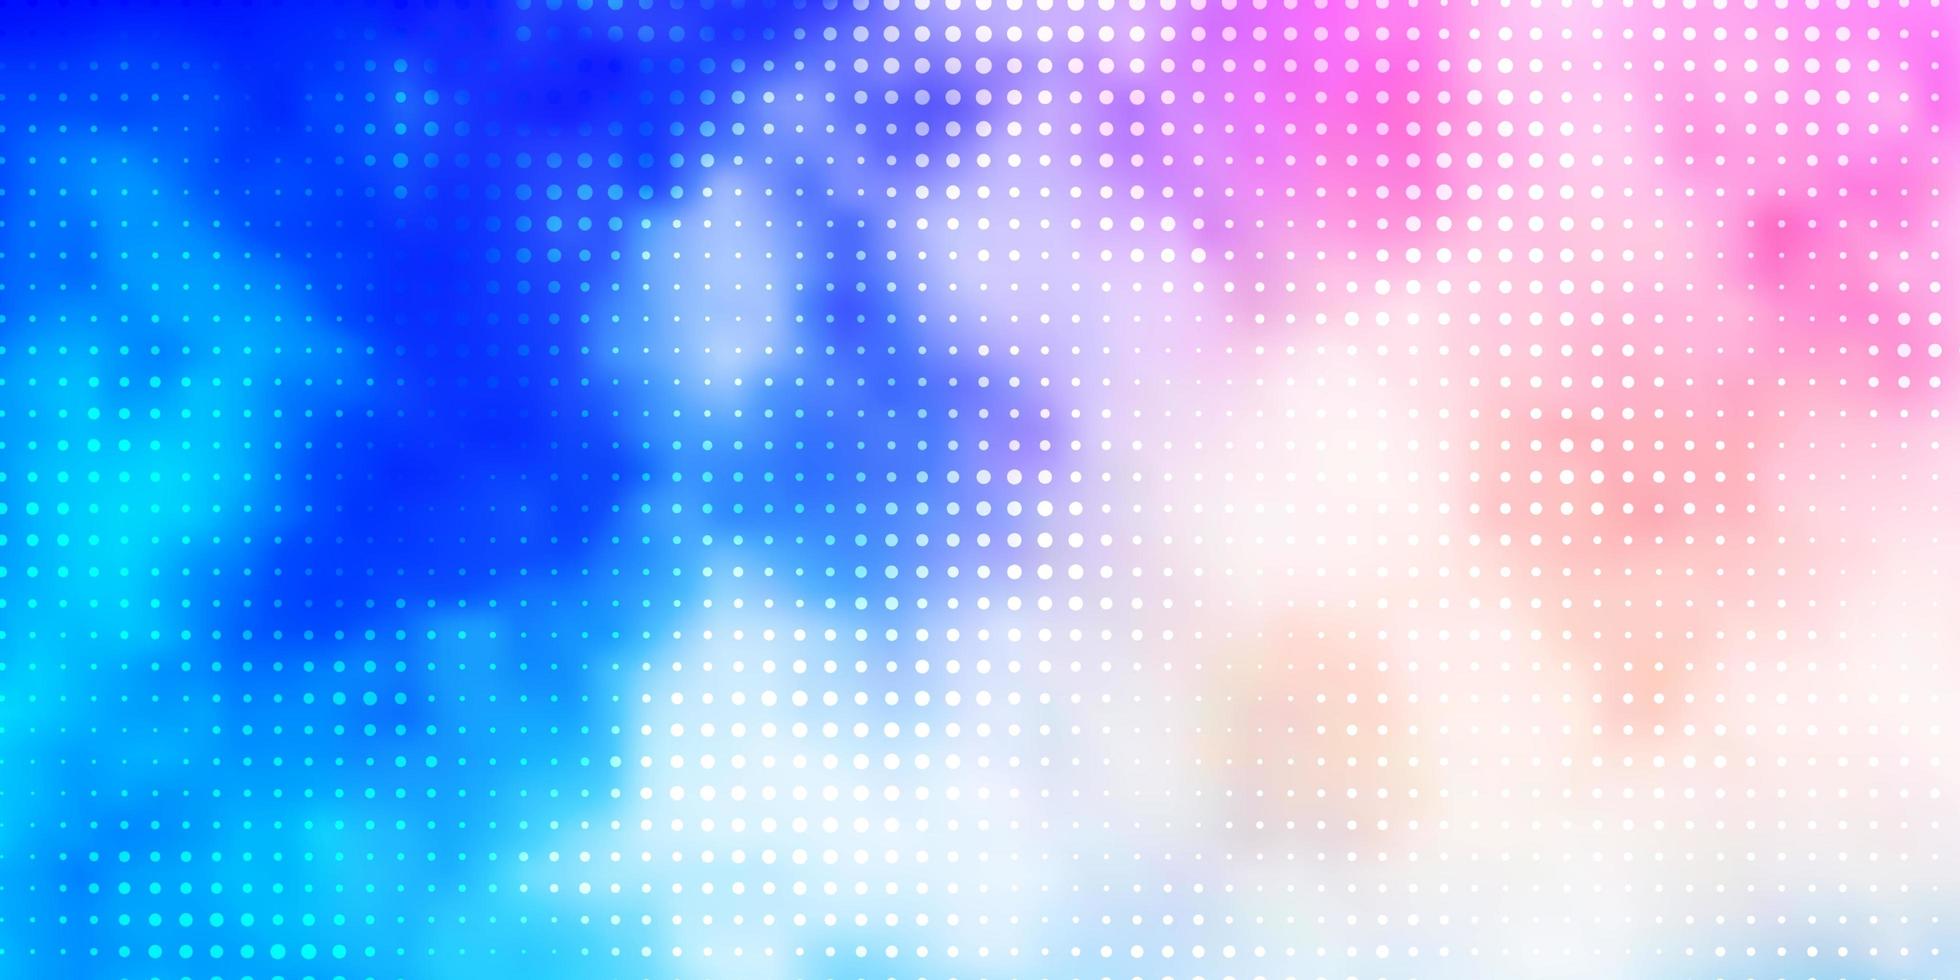 ljusrosa, blå vektormall med cirklar. färgglad illustration med lutande prickar i naturstil. design för affischer, banderoller. vektor